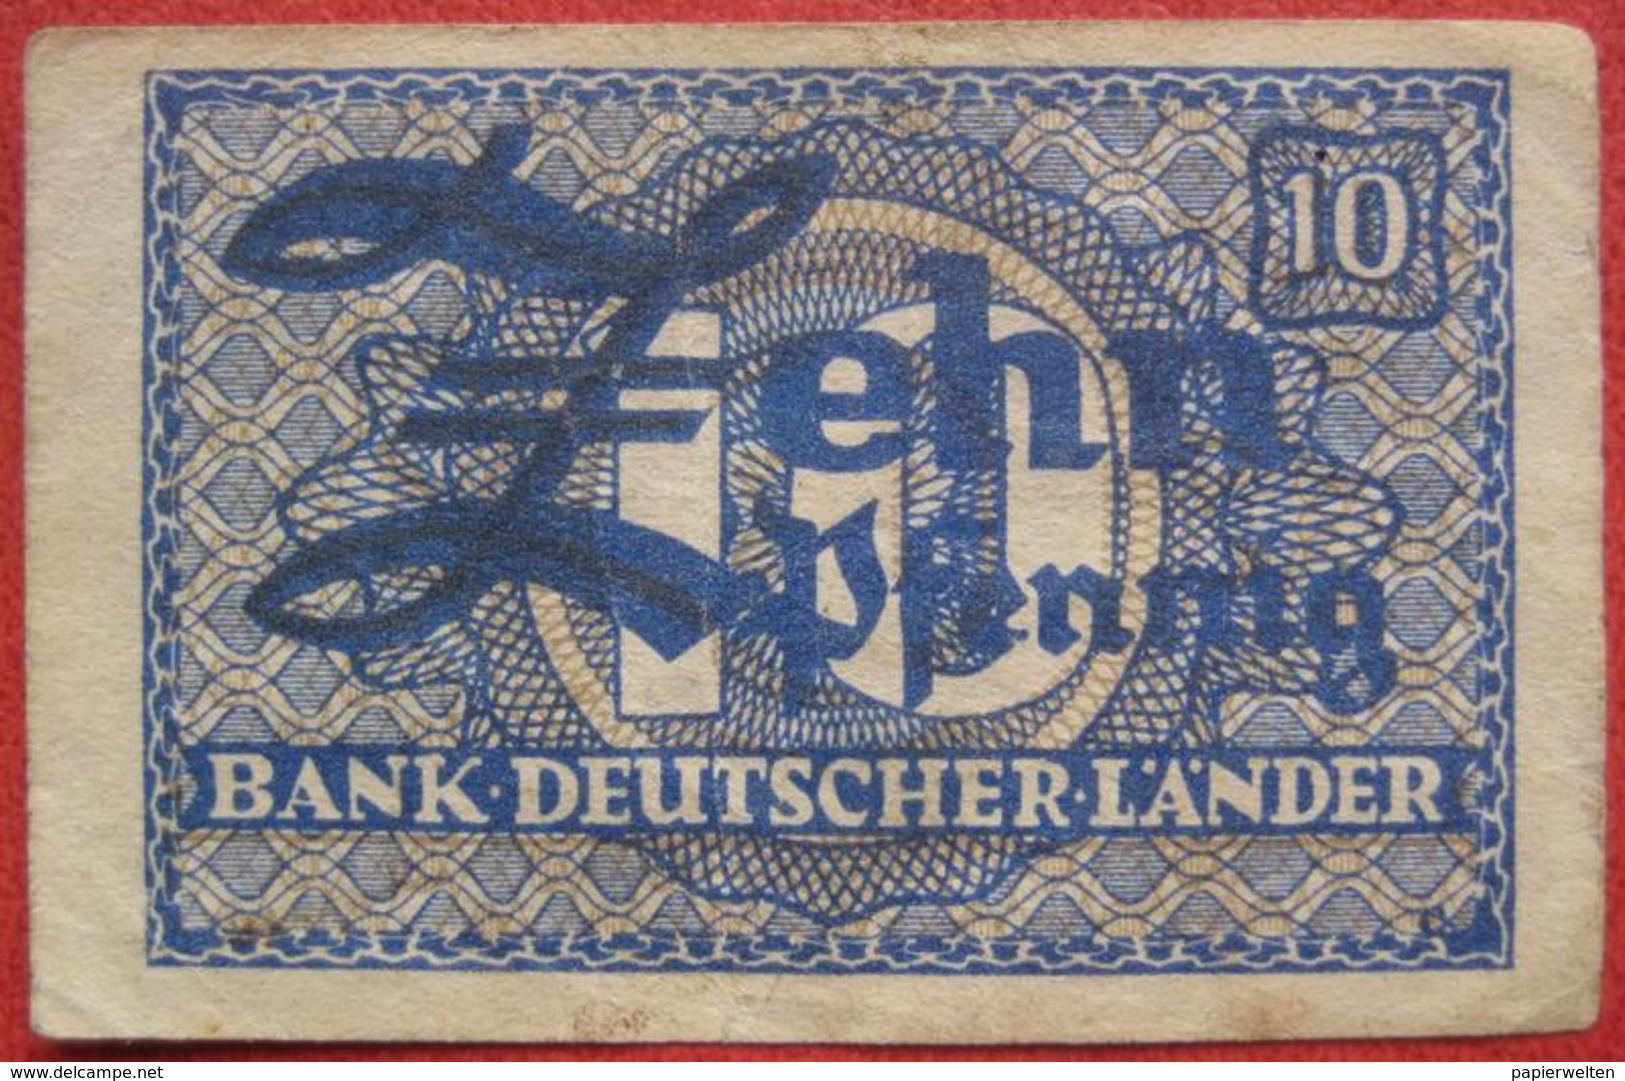 10 Pfennig ND (BRD WPM 12) Bank Deutscher Länder - 10 Pfennig